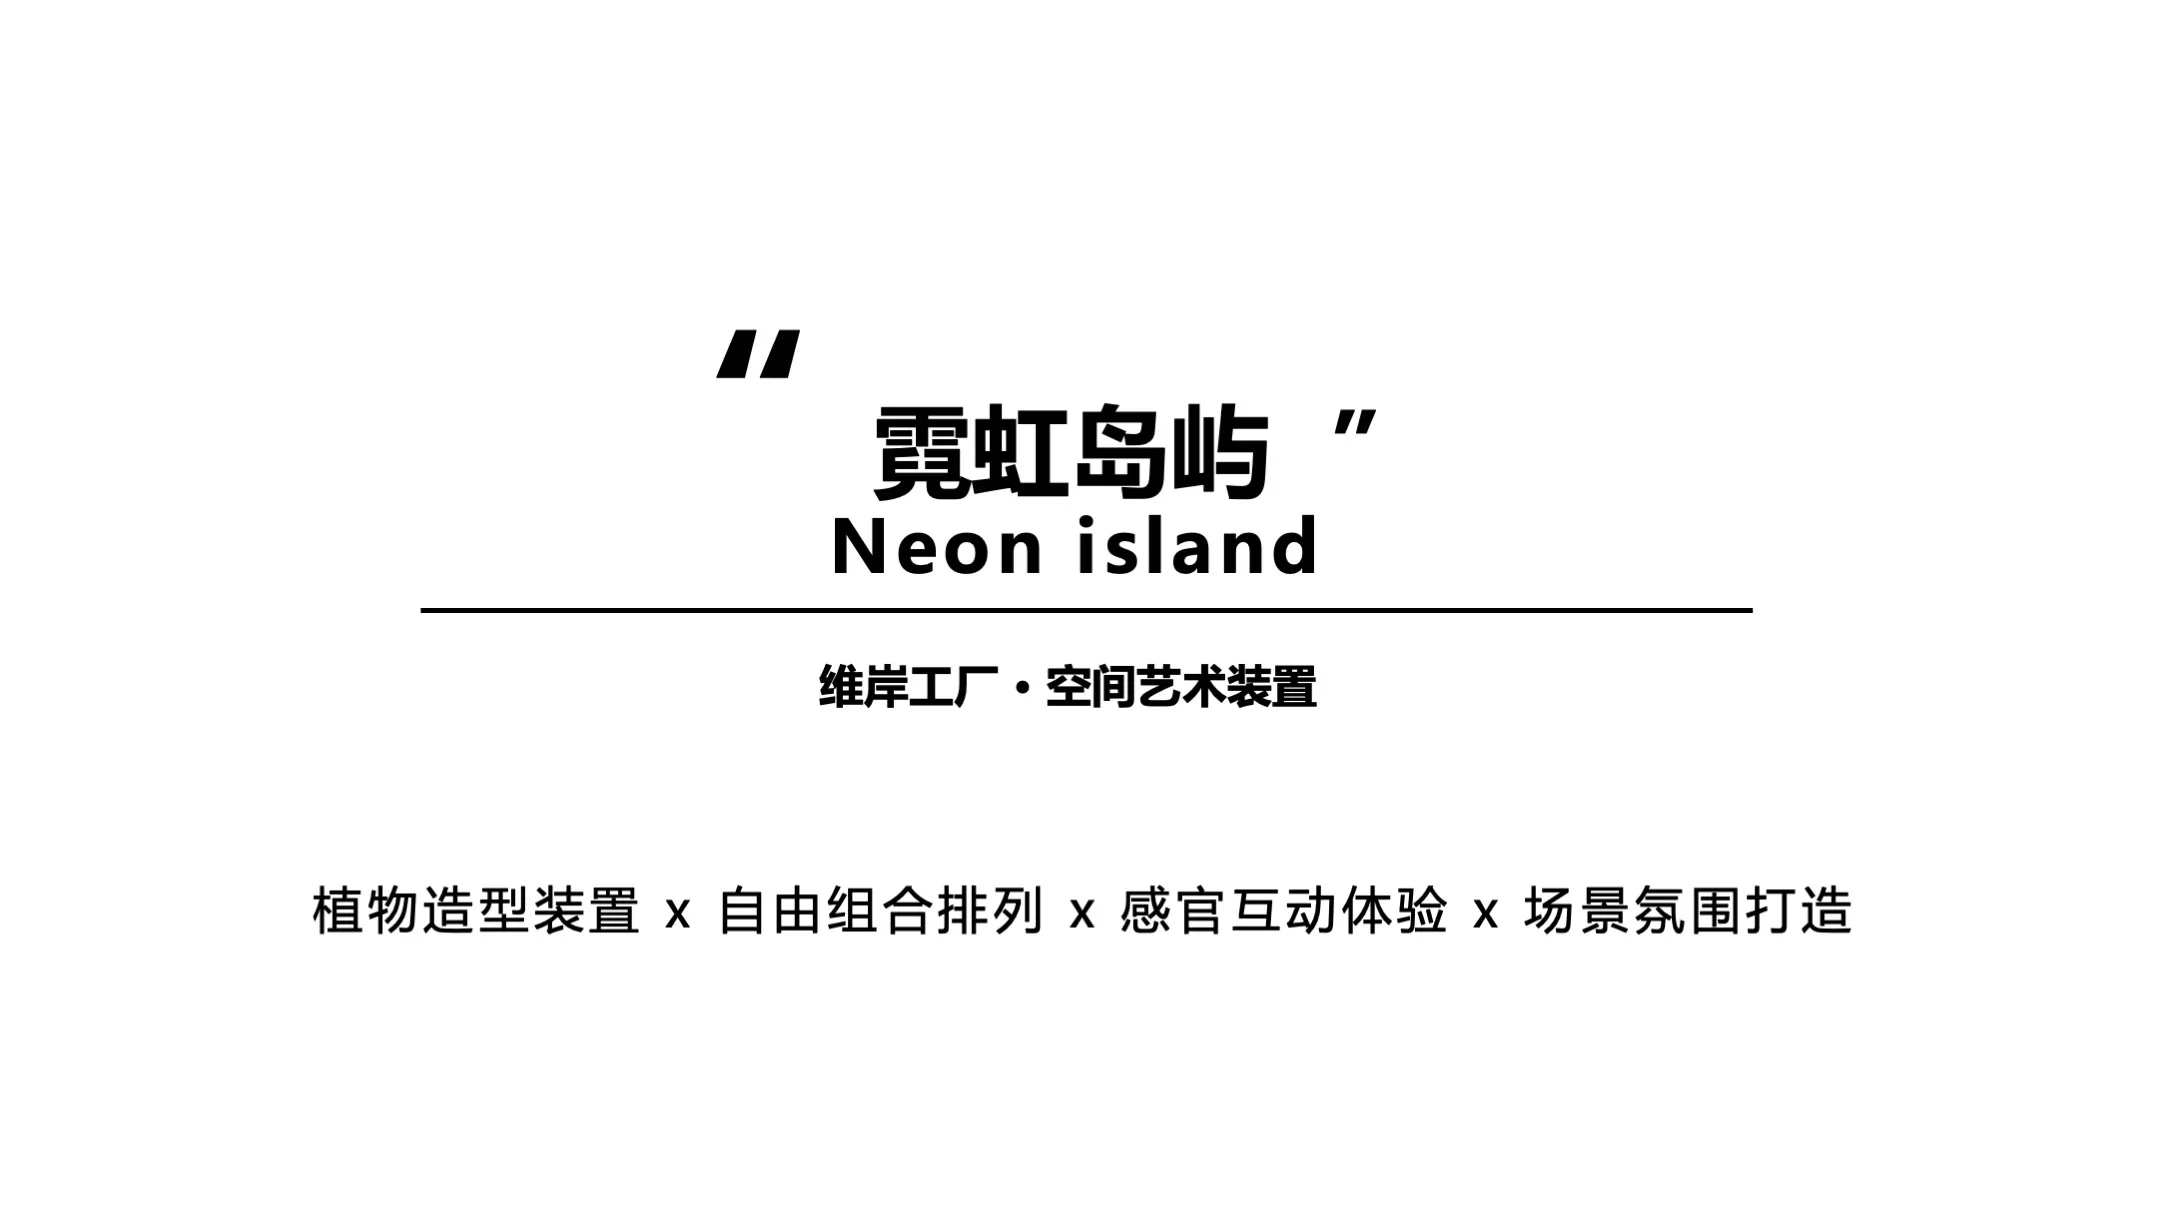 【霓虹岛屿】Neon island空间艺术装置-感映艺术出品